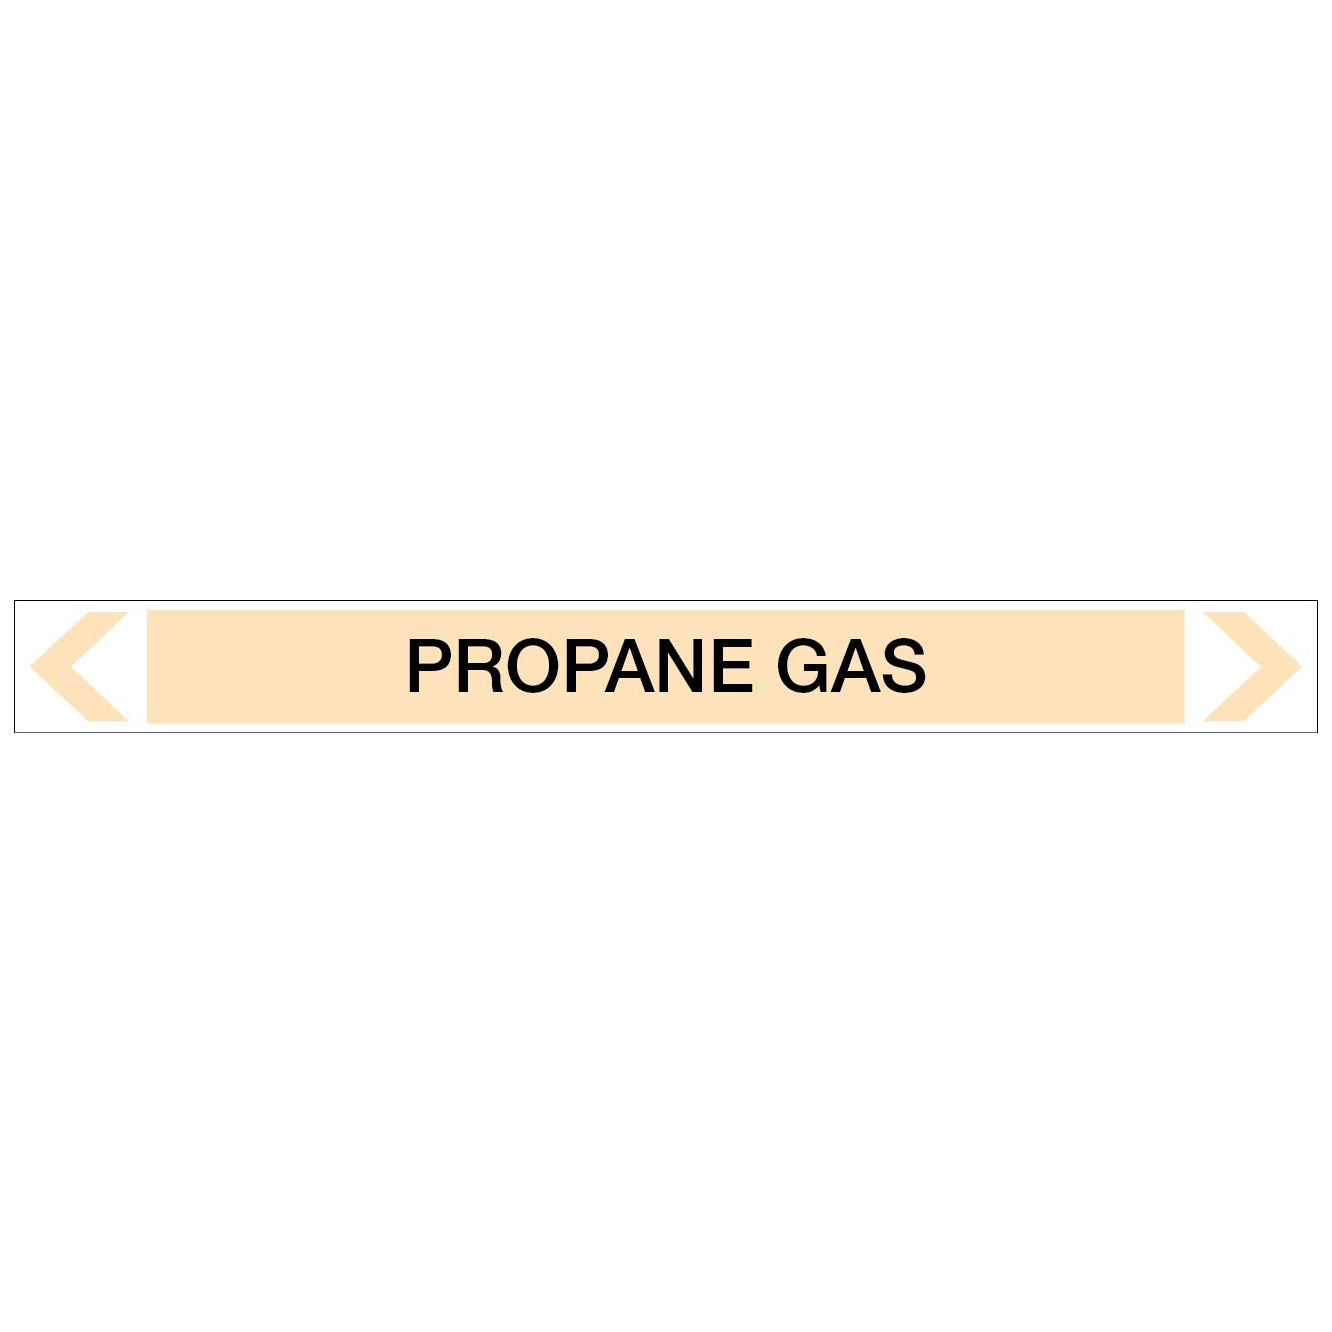 Gases - Propane Gas - Pipe Marker Sticker